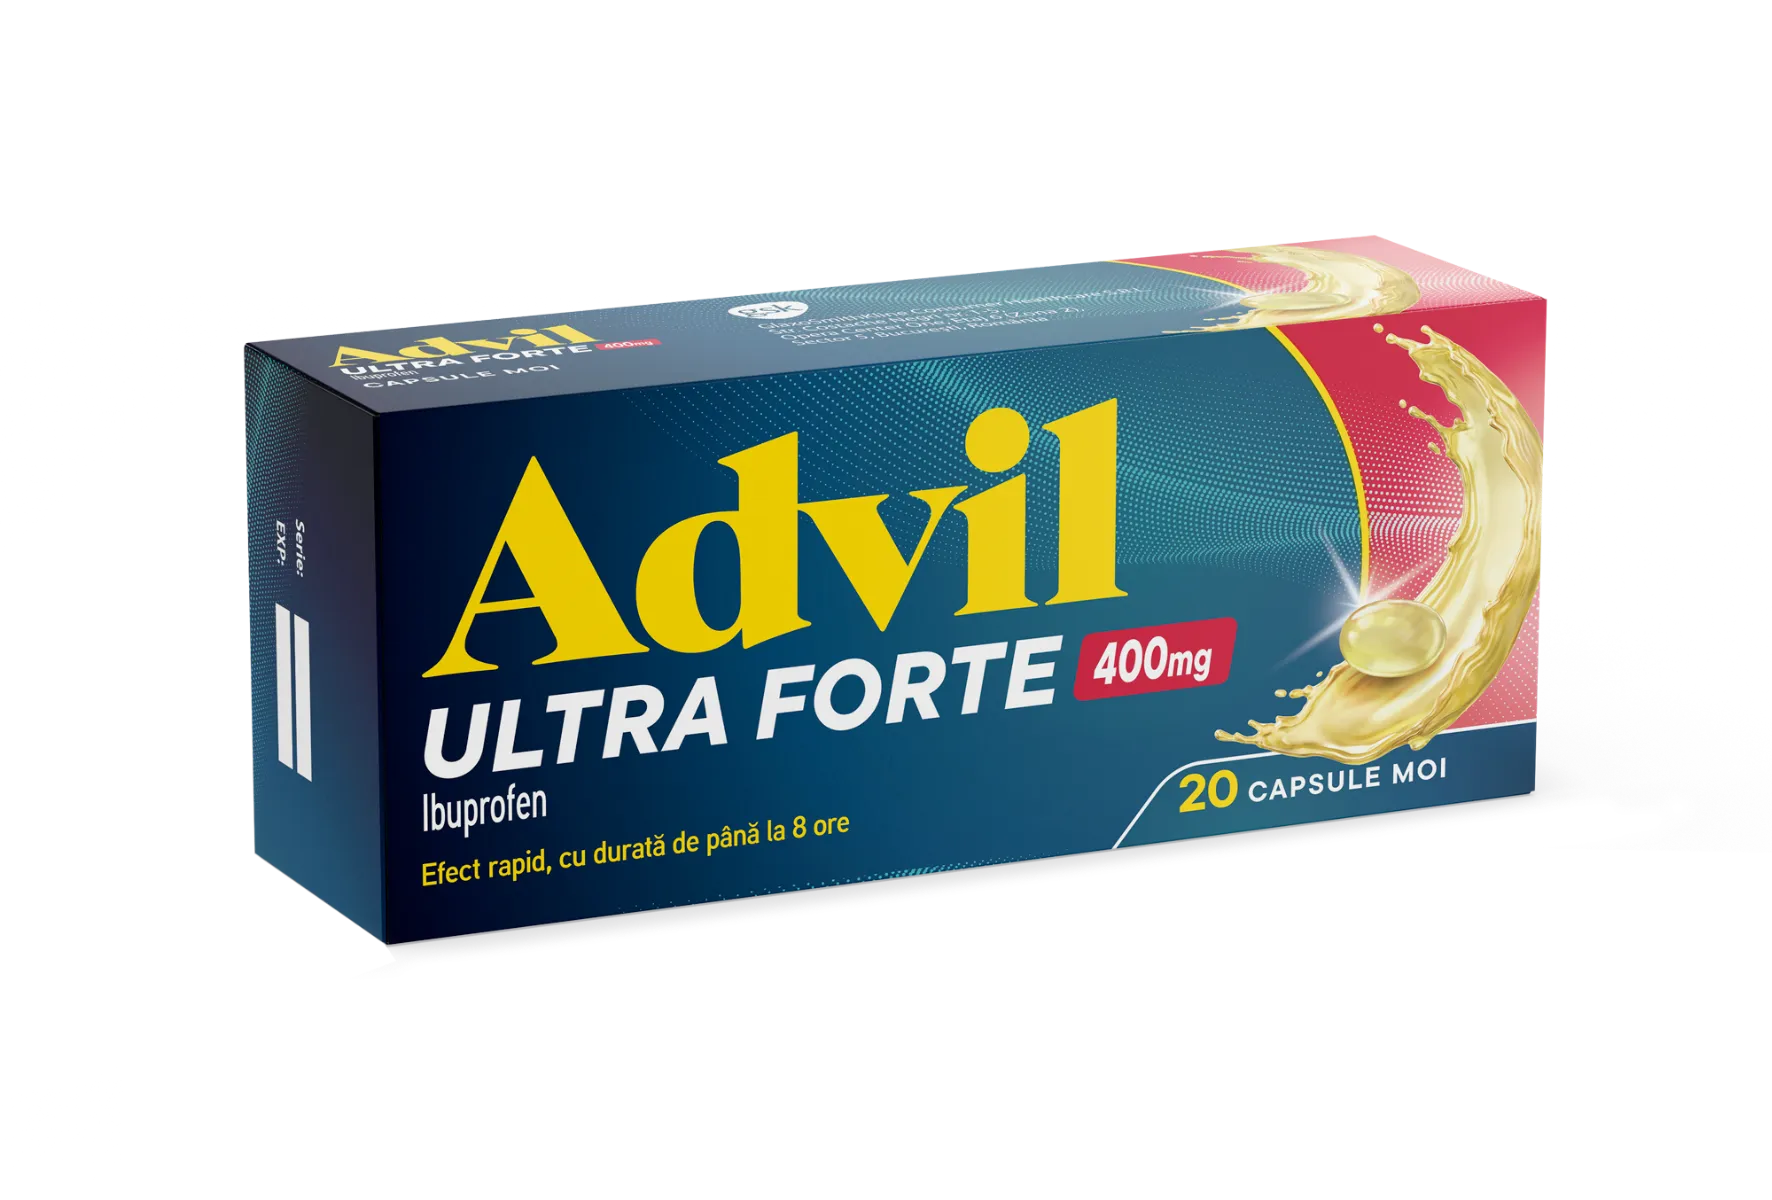 Advil Ultra Forte 400mg, 20 capsule moi, GSK 